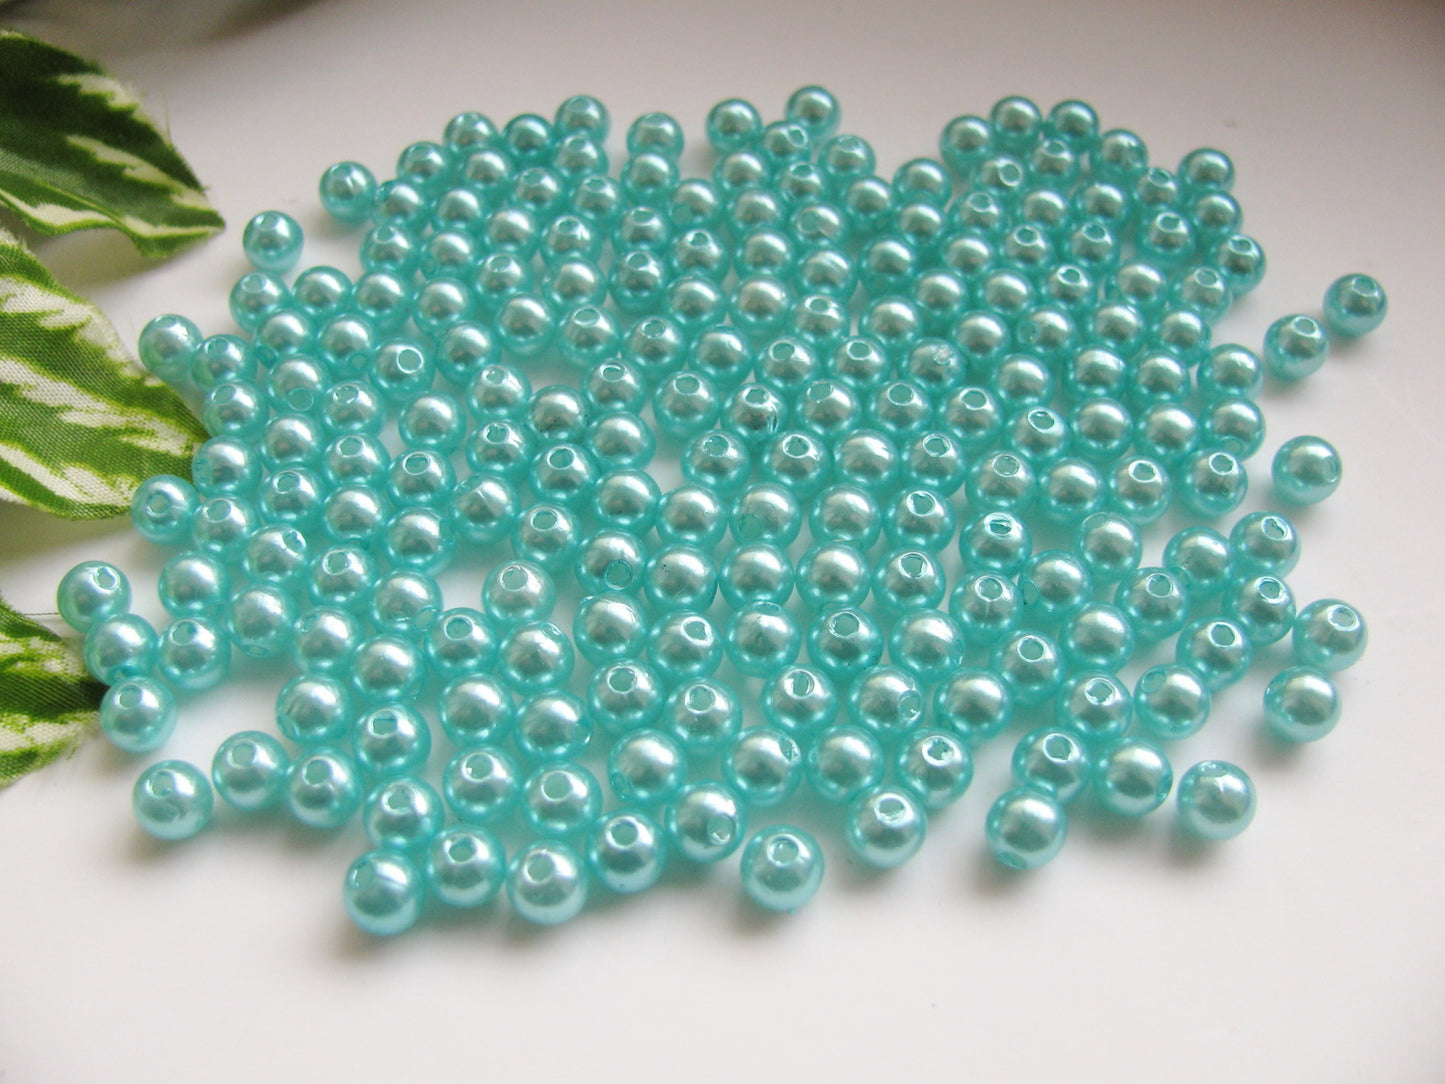 100 Wachsperlen hellblau, türkis 6mm, Perlen basteln, Kunststoffperlen, rund